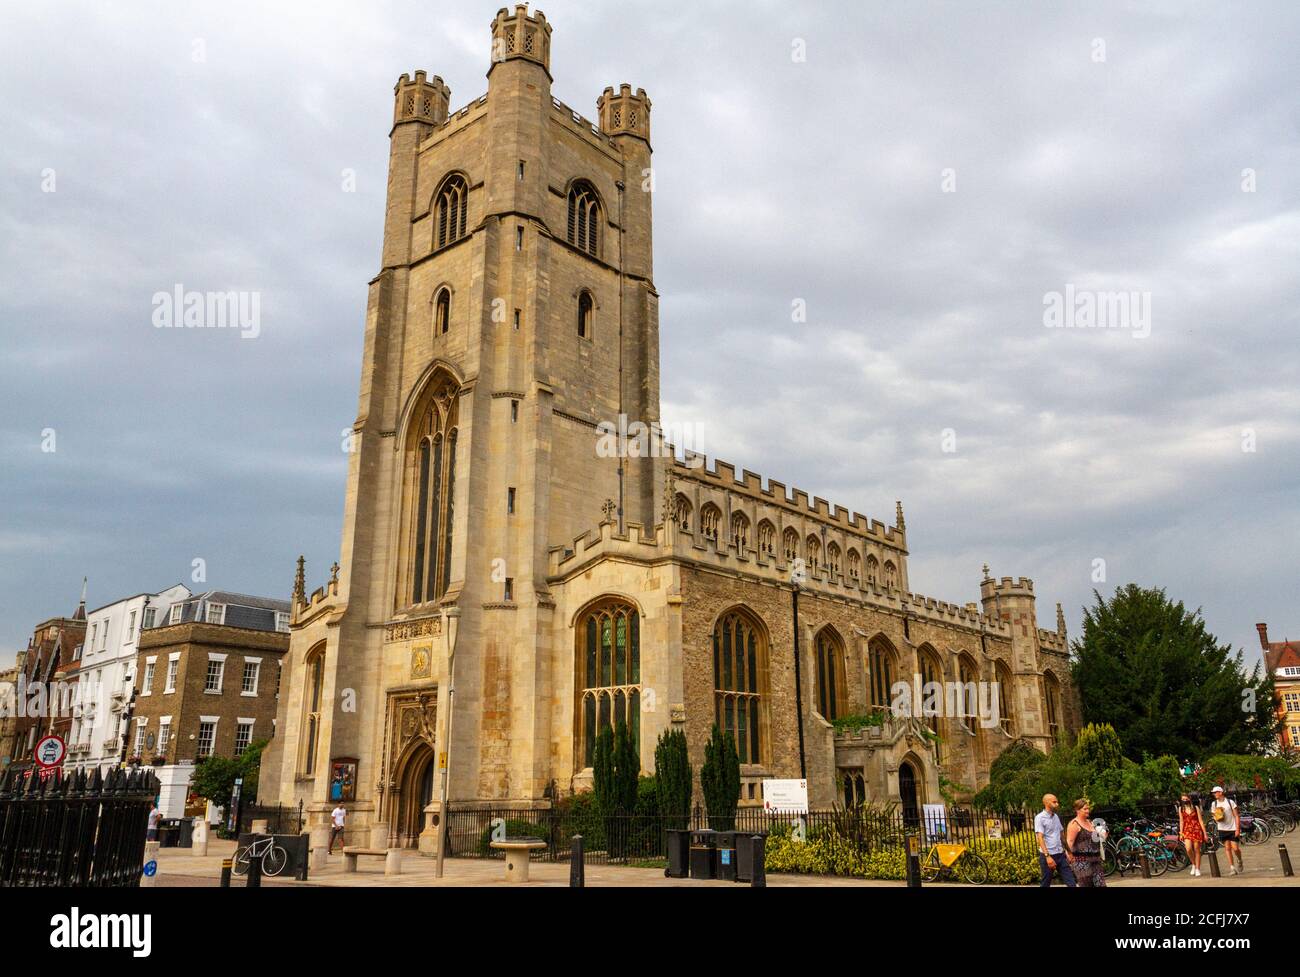 Great St Mary's Church, Kings Parade, Cambridge, Cambridgeshire, UK. Stock Photo